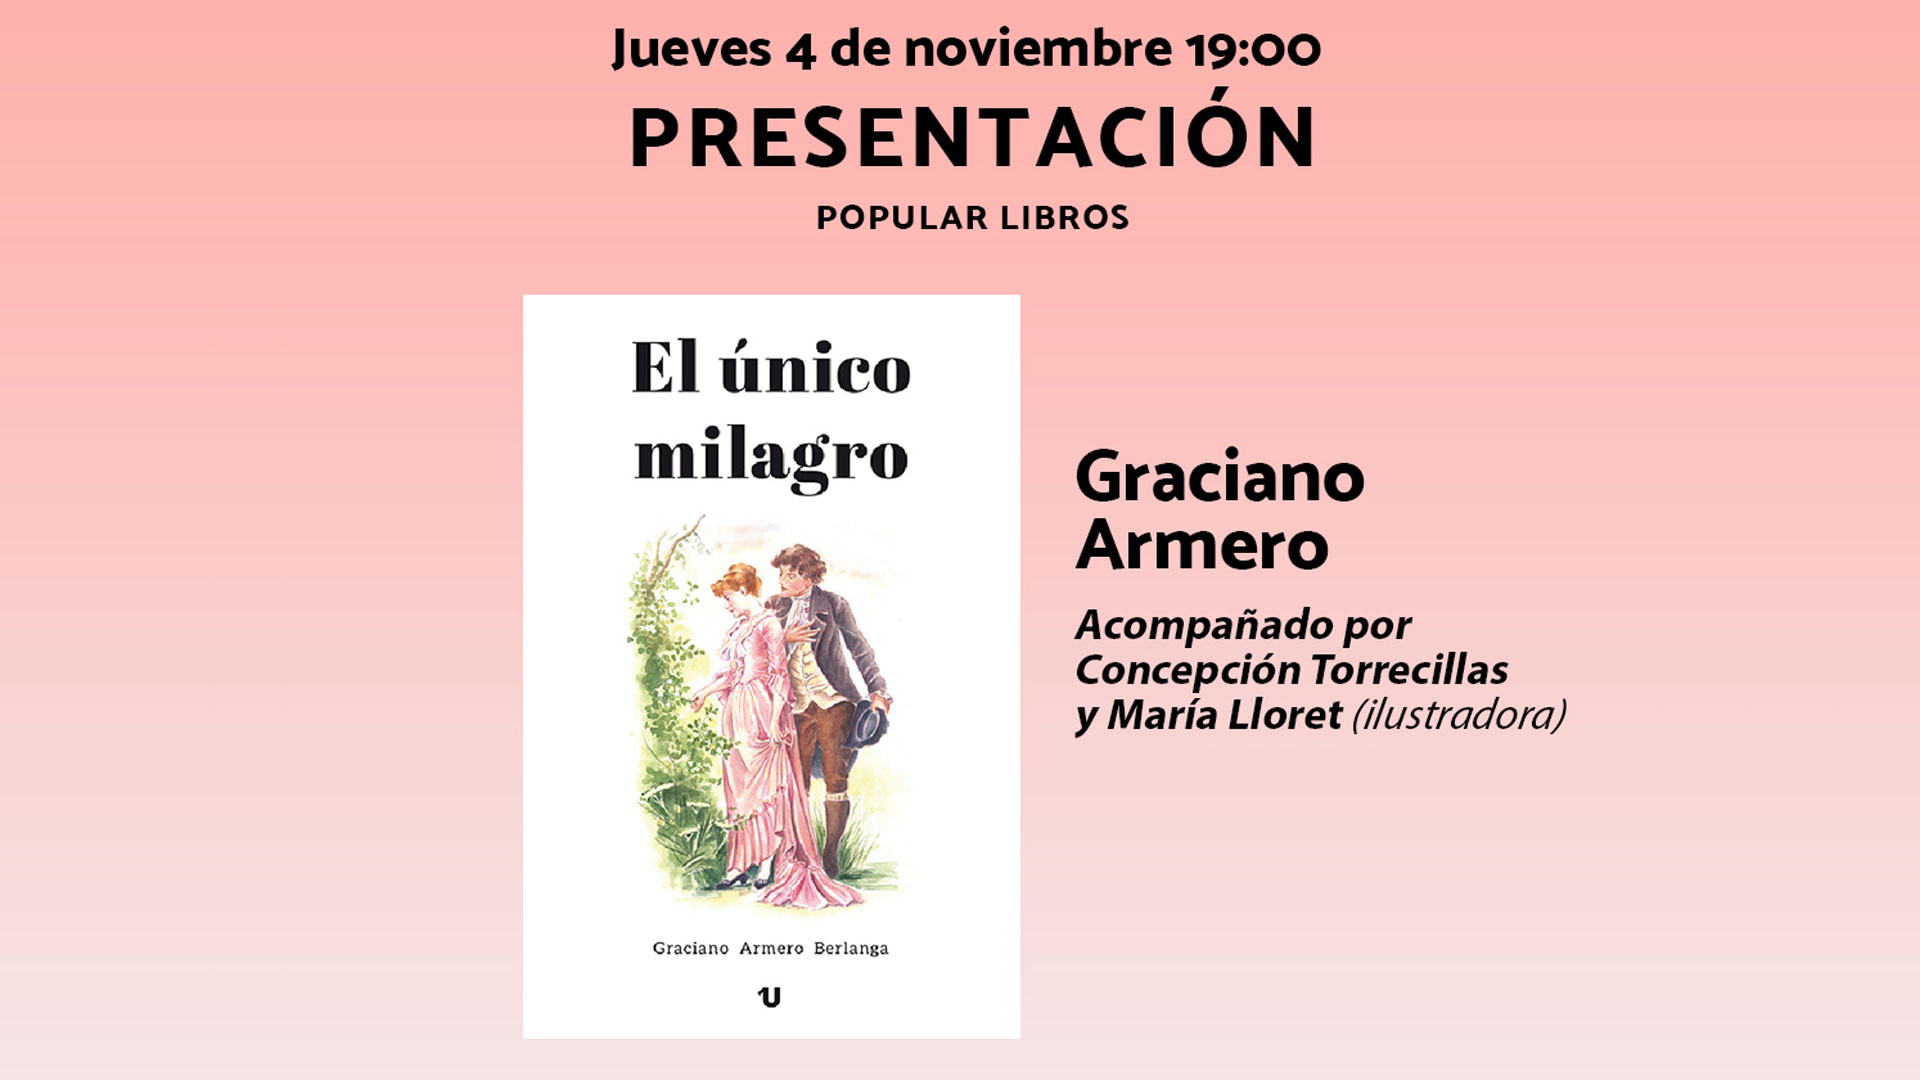 Graciano Armero presenta 'El único milagro' en Popular Libros